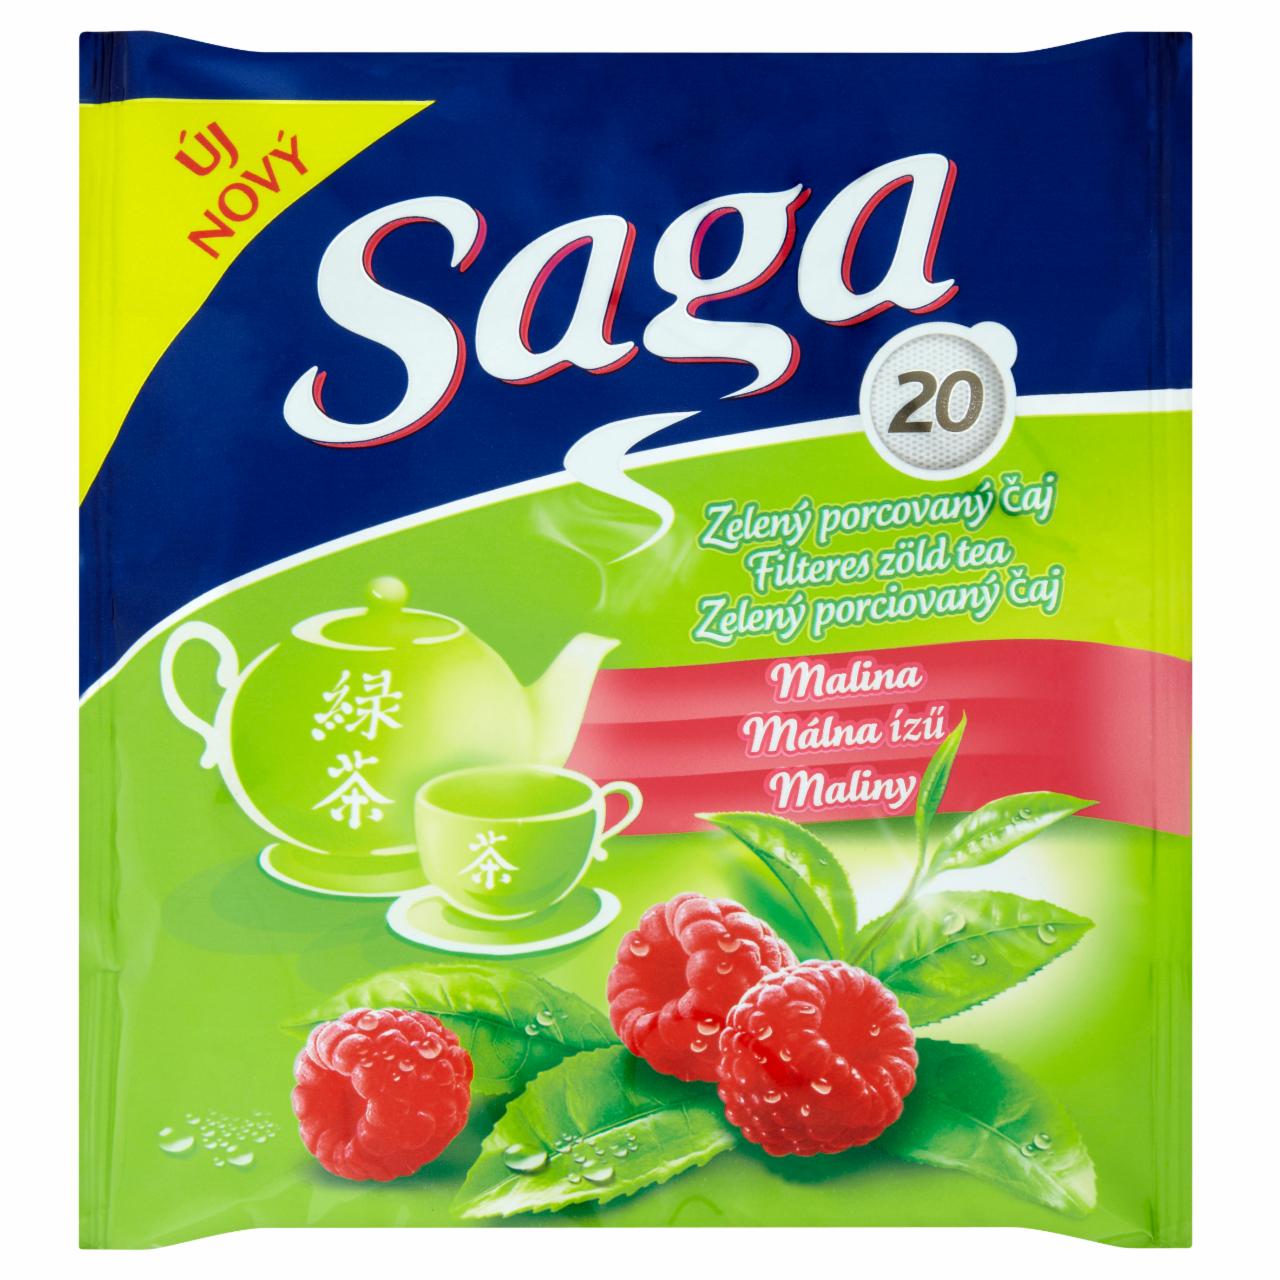 Képek - Saga Málna zöld tea 20 filter